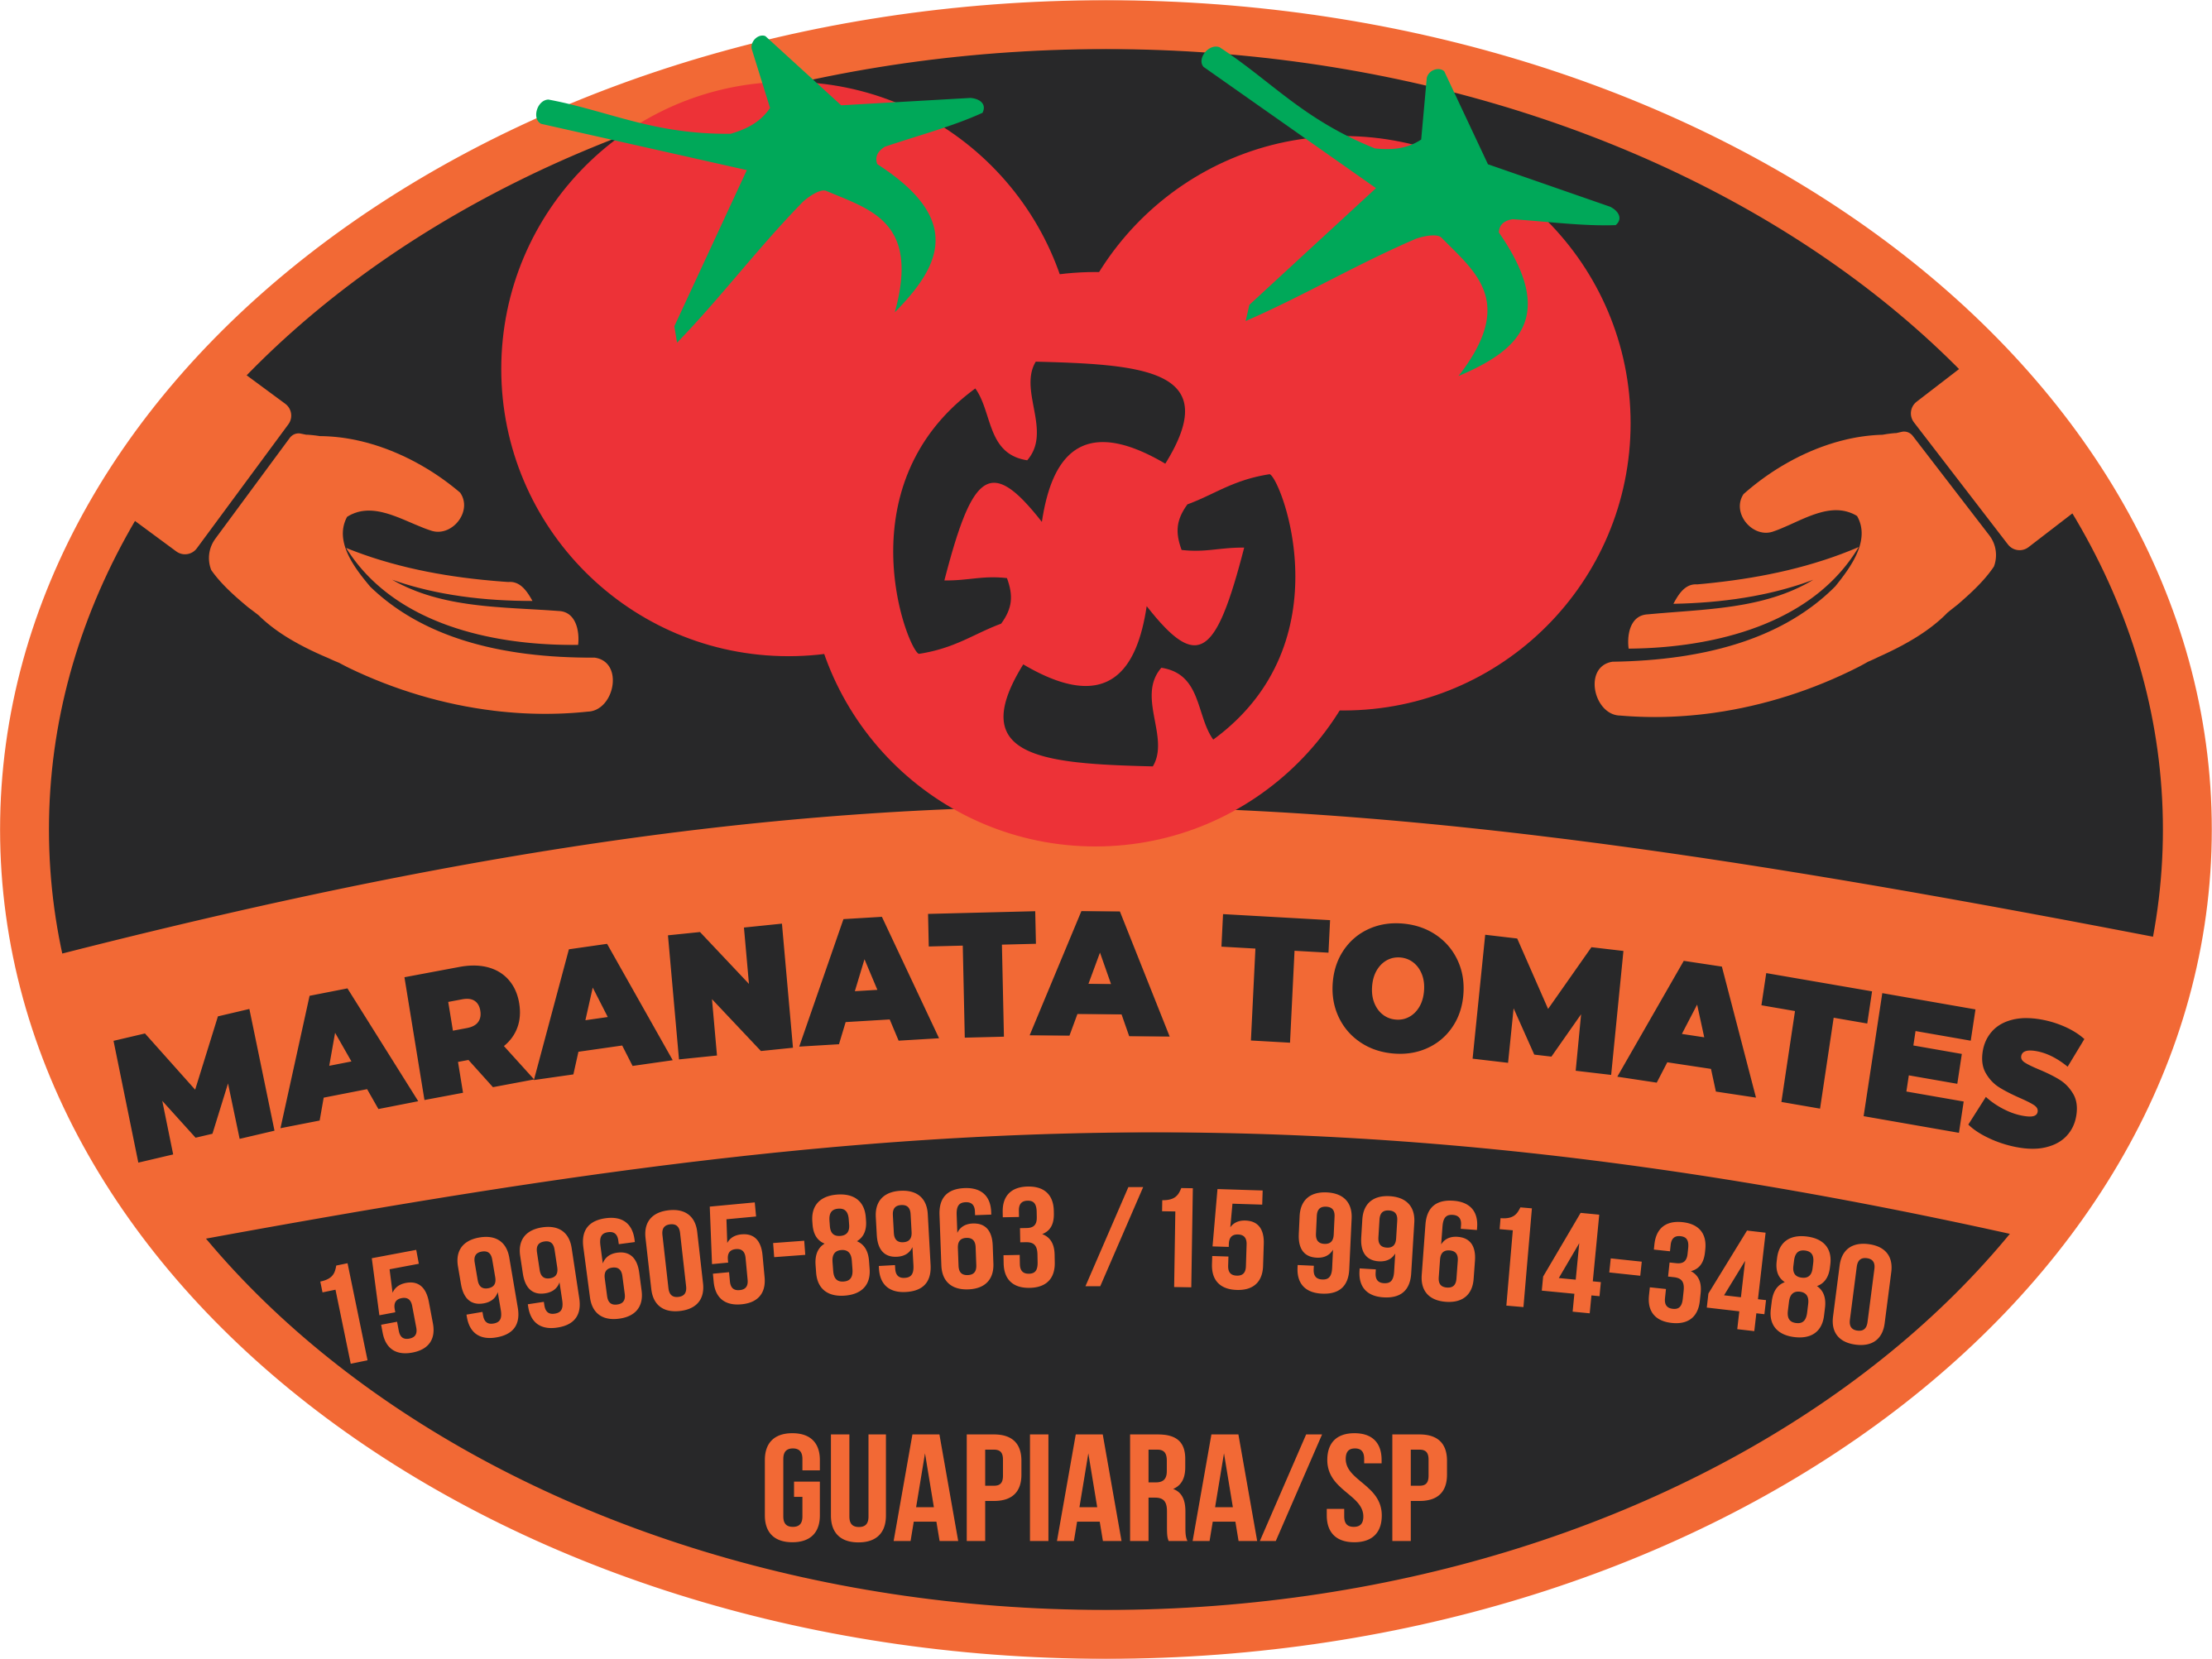 Maranata Tomates